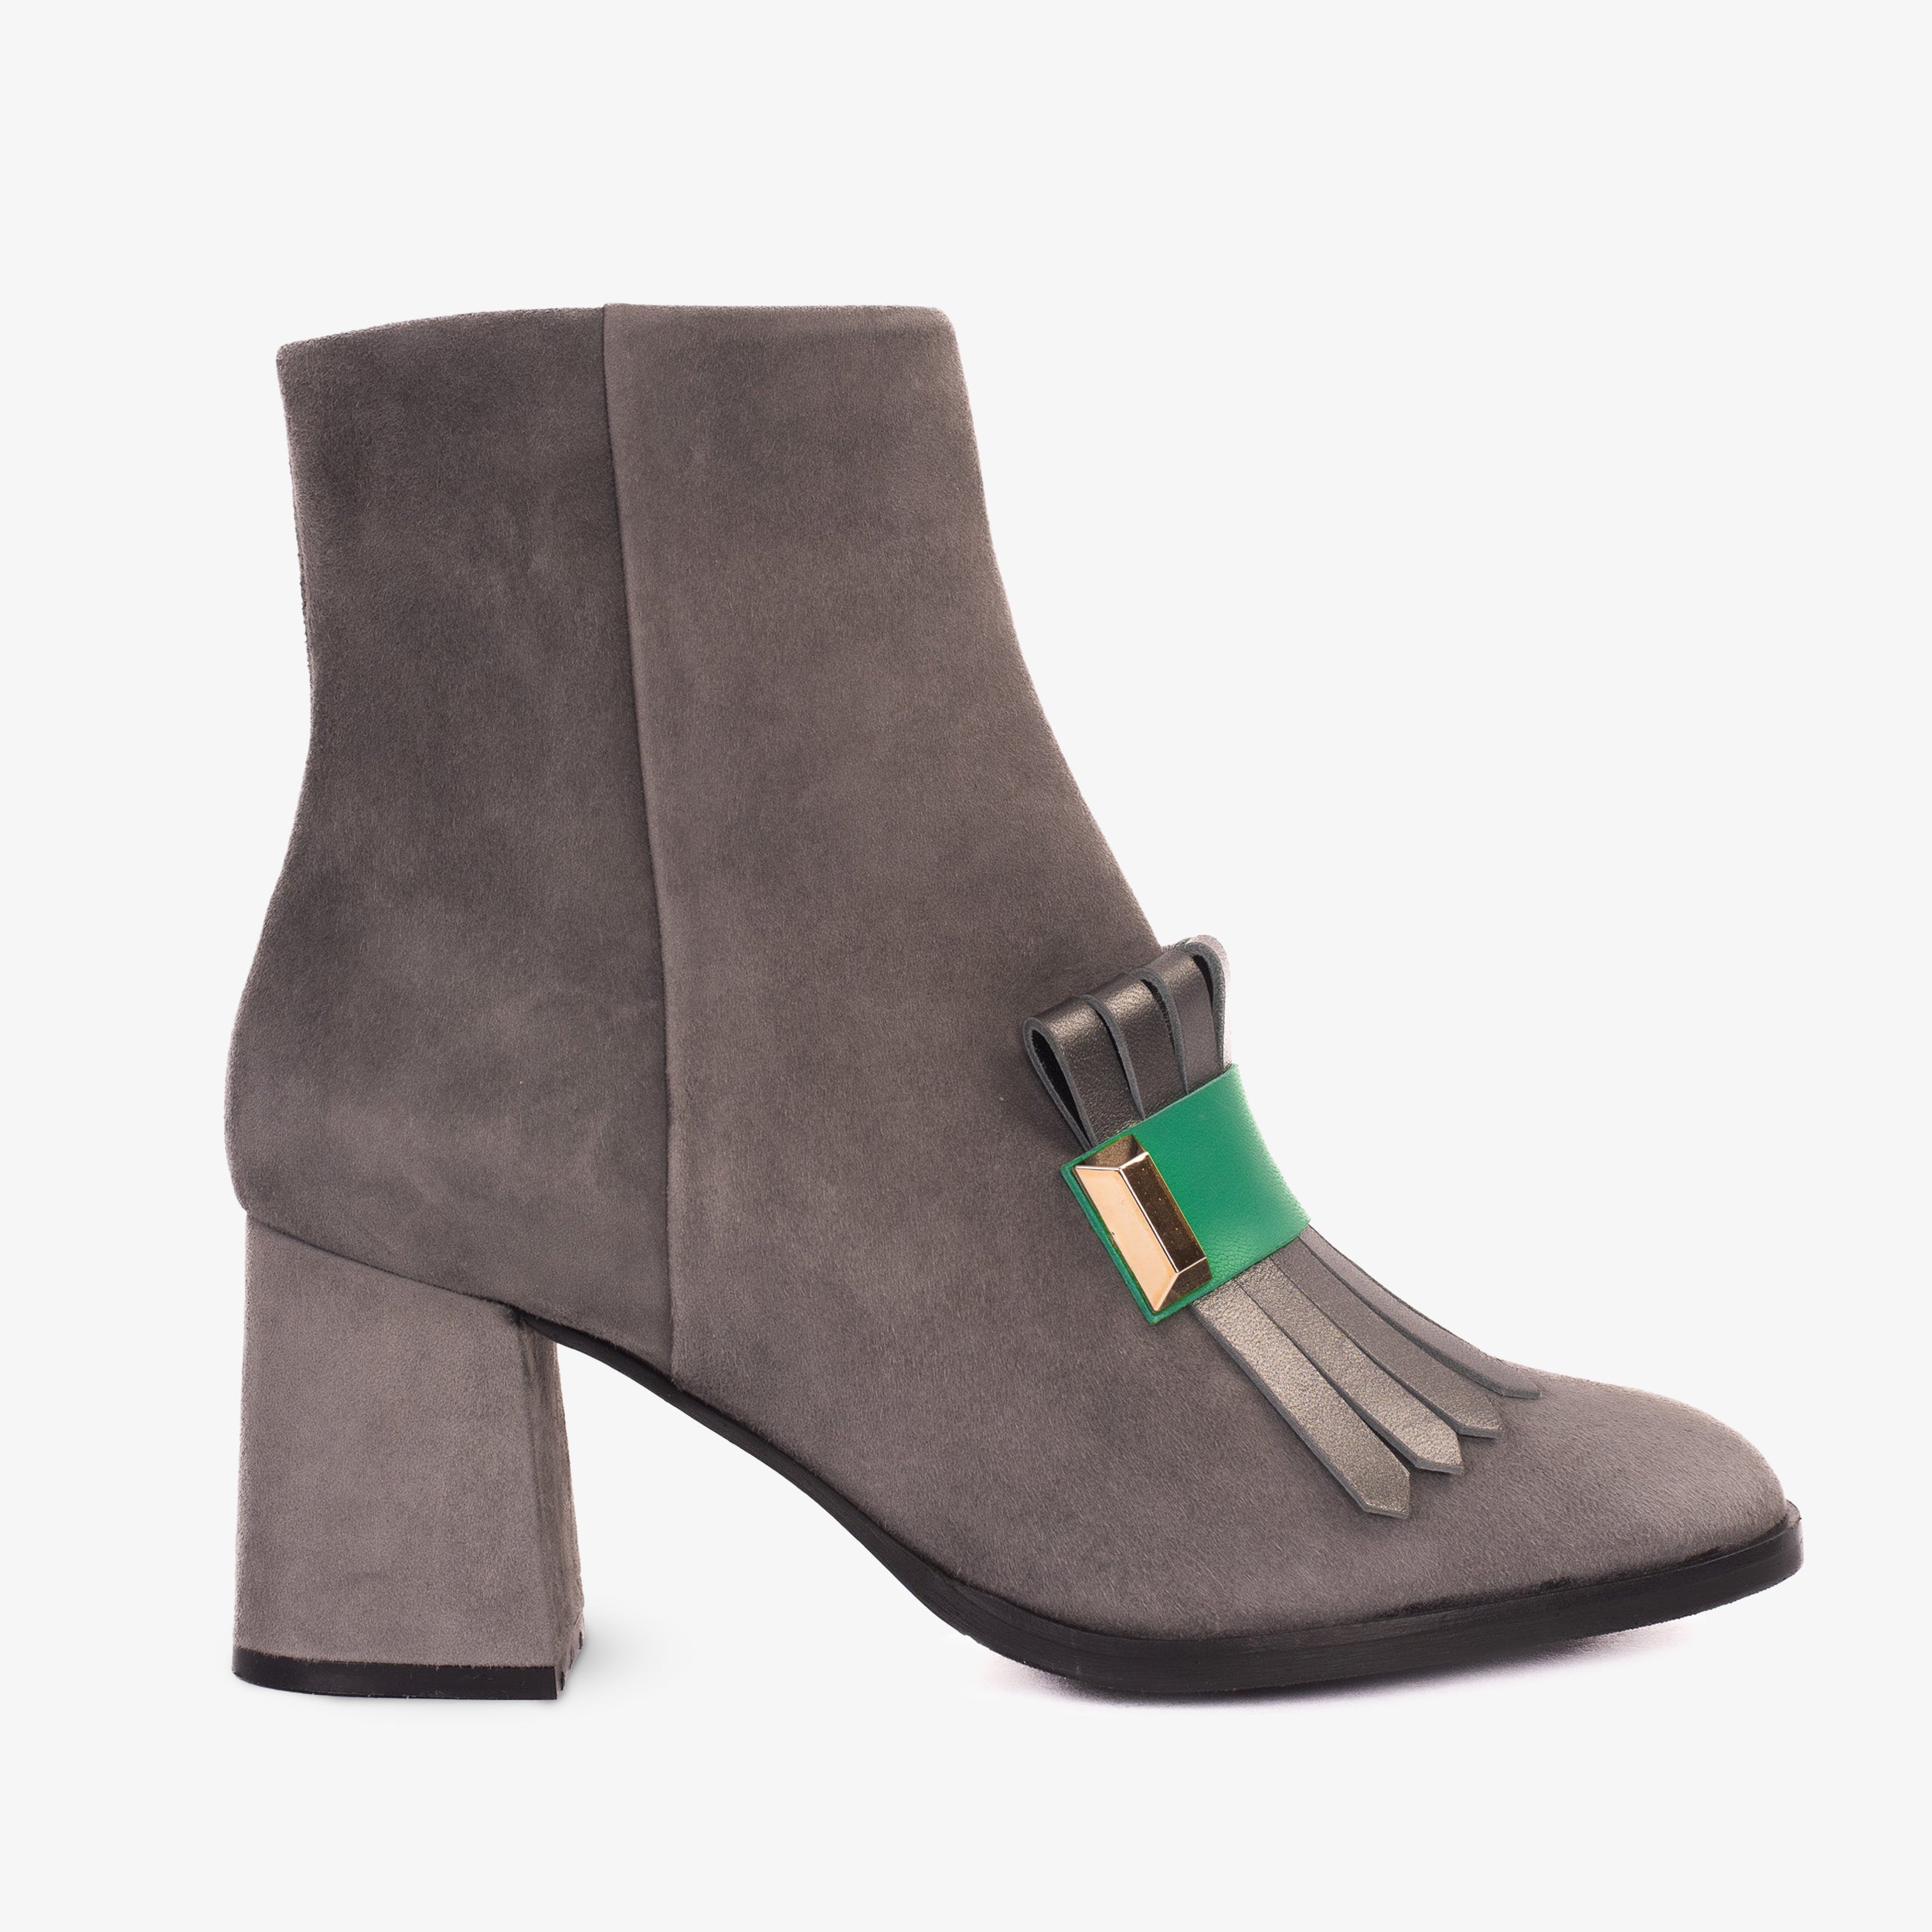 The Luksor Grey Suede Leather Block Heel Women Boot